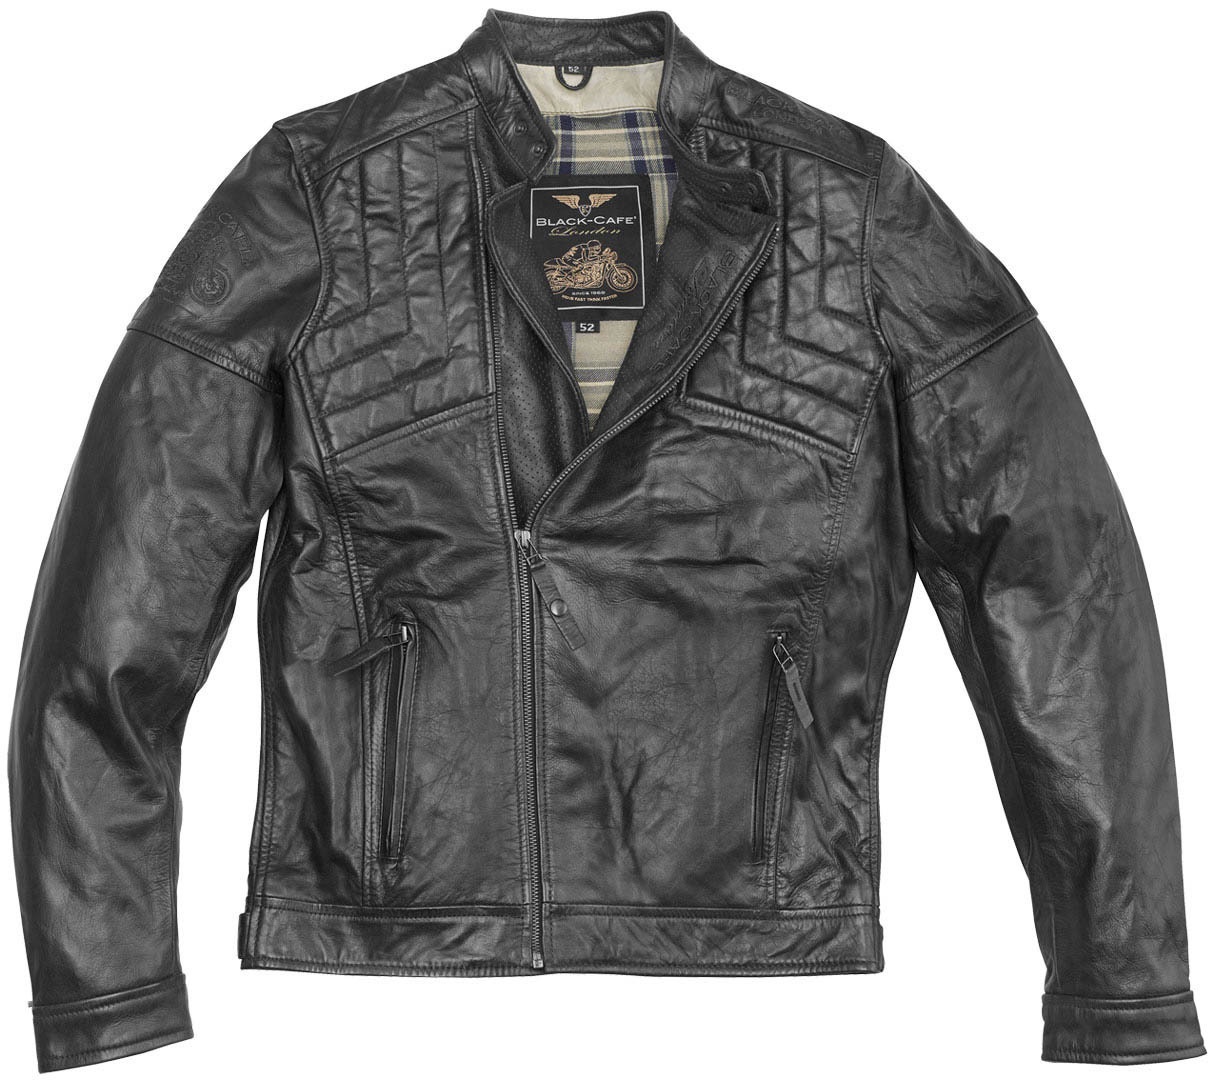 Black-Cafe London Philadelphia Motorfiets lederen jas, zwart, 54